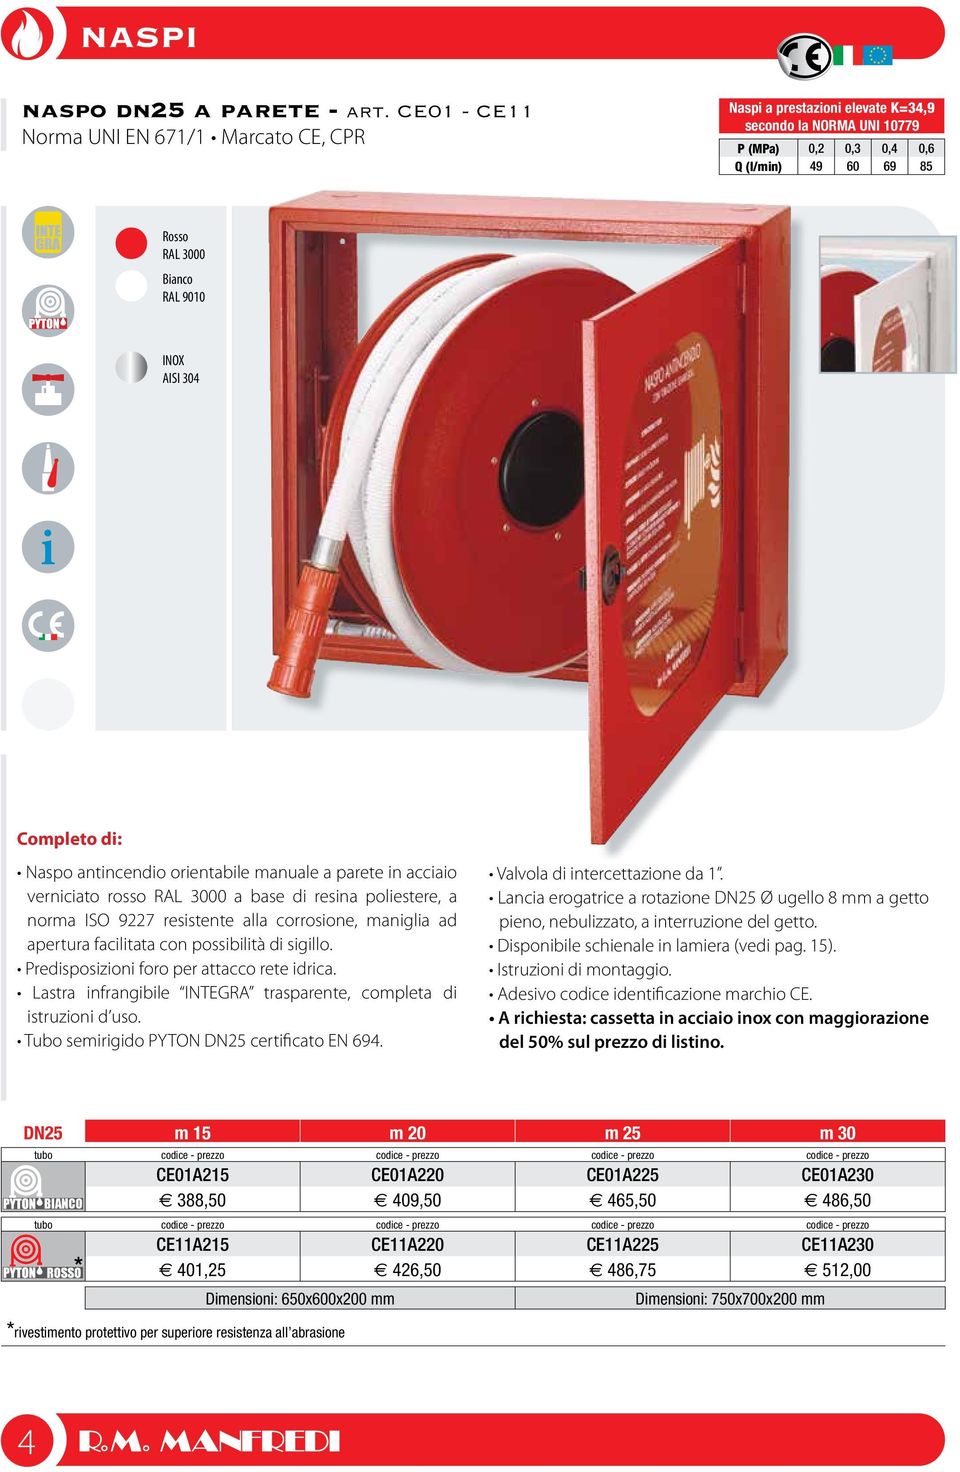 Completo di: Naspo antincendio orientabile manuale a parete in acciaio verniciato rosso RAL 3000 a base di resina poliestere, a norma ISO 9227 resistente alla corrosione, maniglia ad apertura